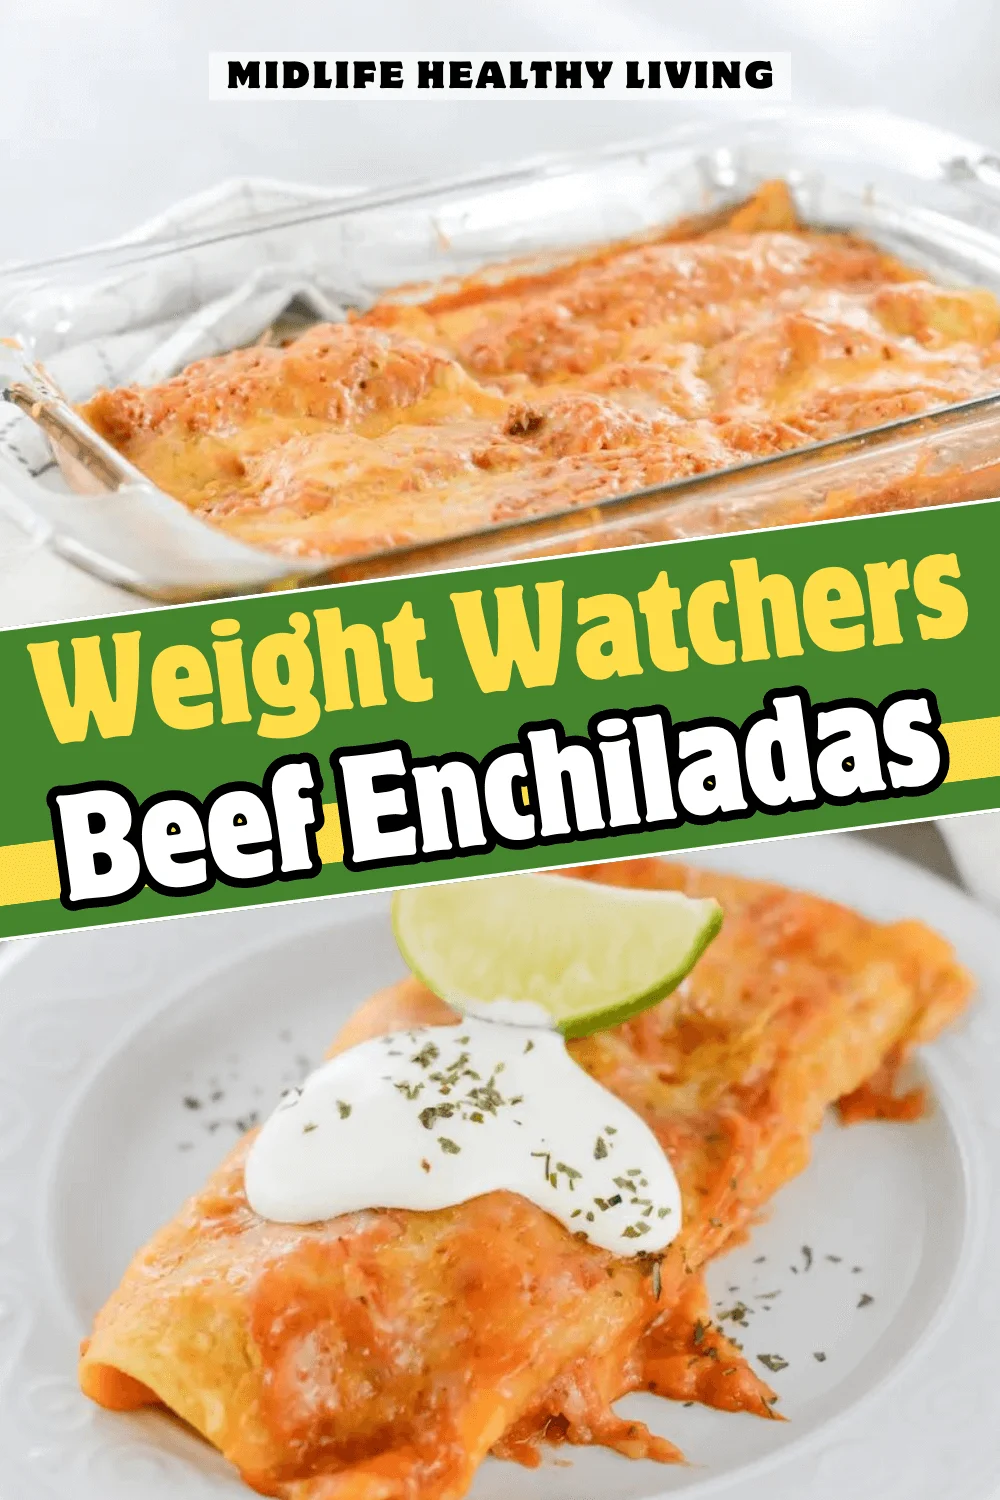 Weight Watchers Beef Enchiladas